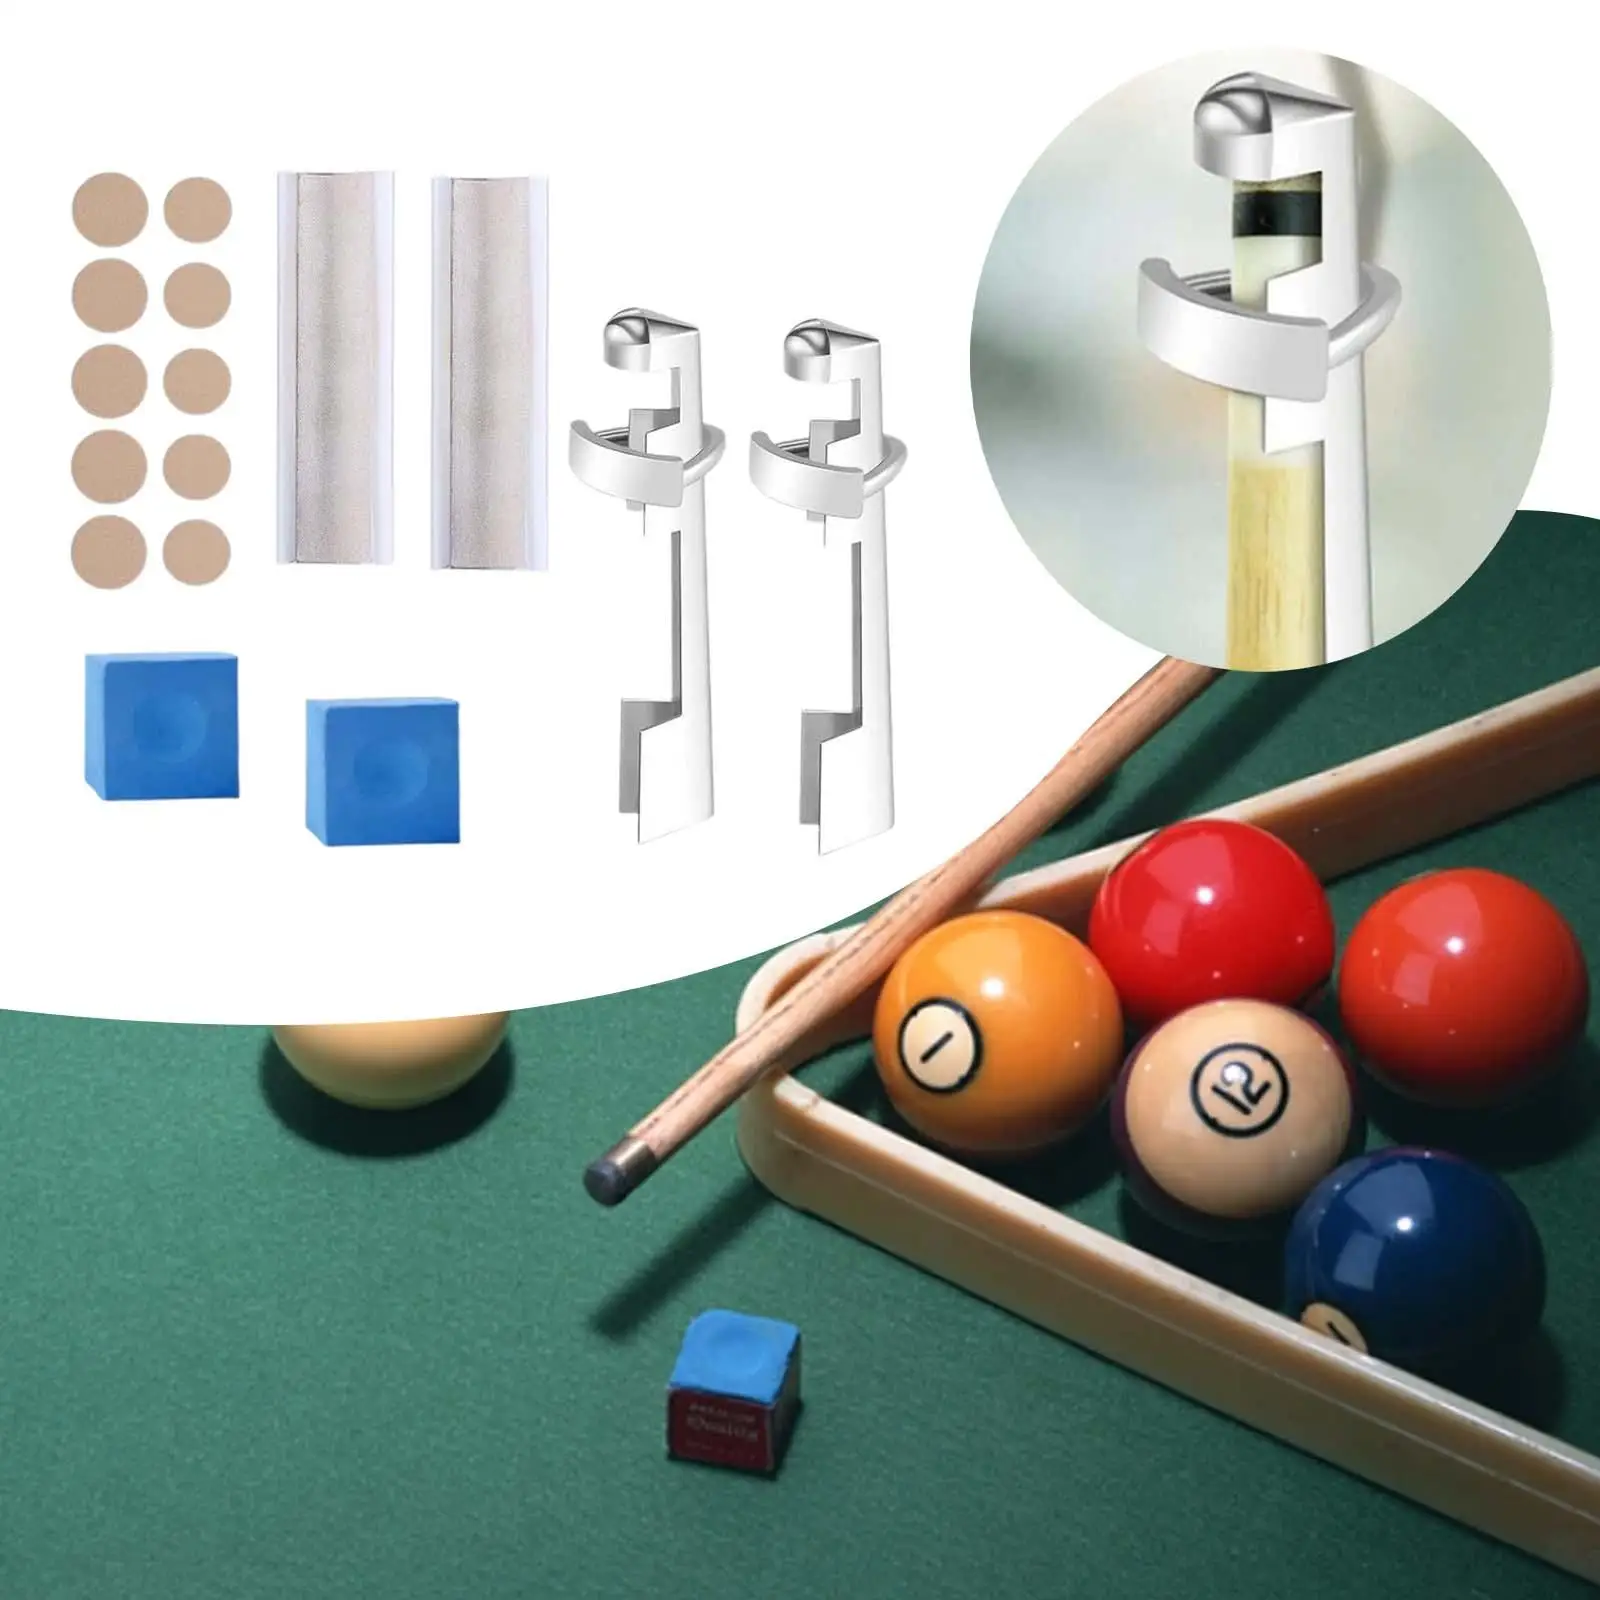 16Pcs Pool Cue Tip Repair Kit Billiard Cue Tips Replacement Table Pool Accessories Snooker Cue Tip Repair Set Billiard Table